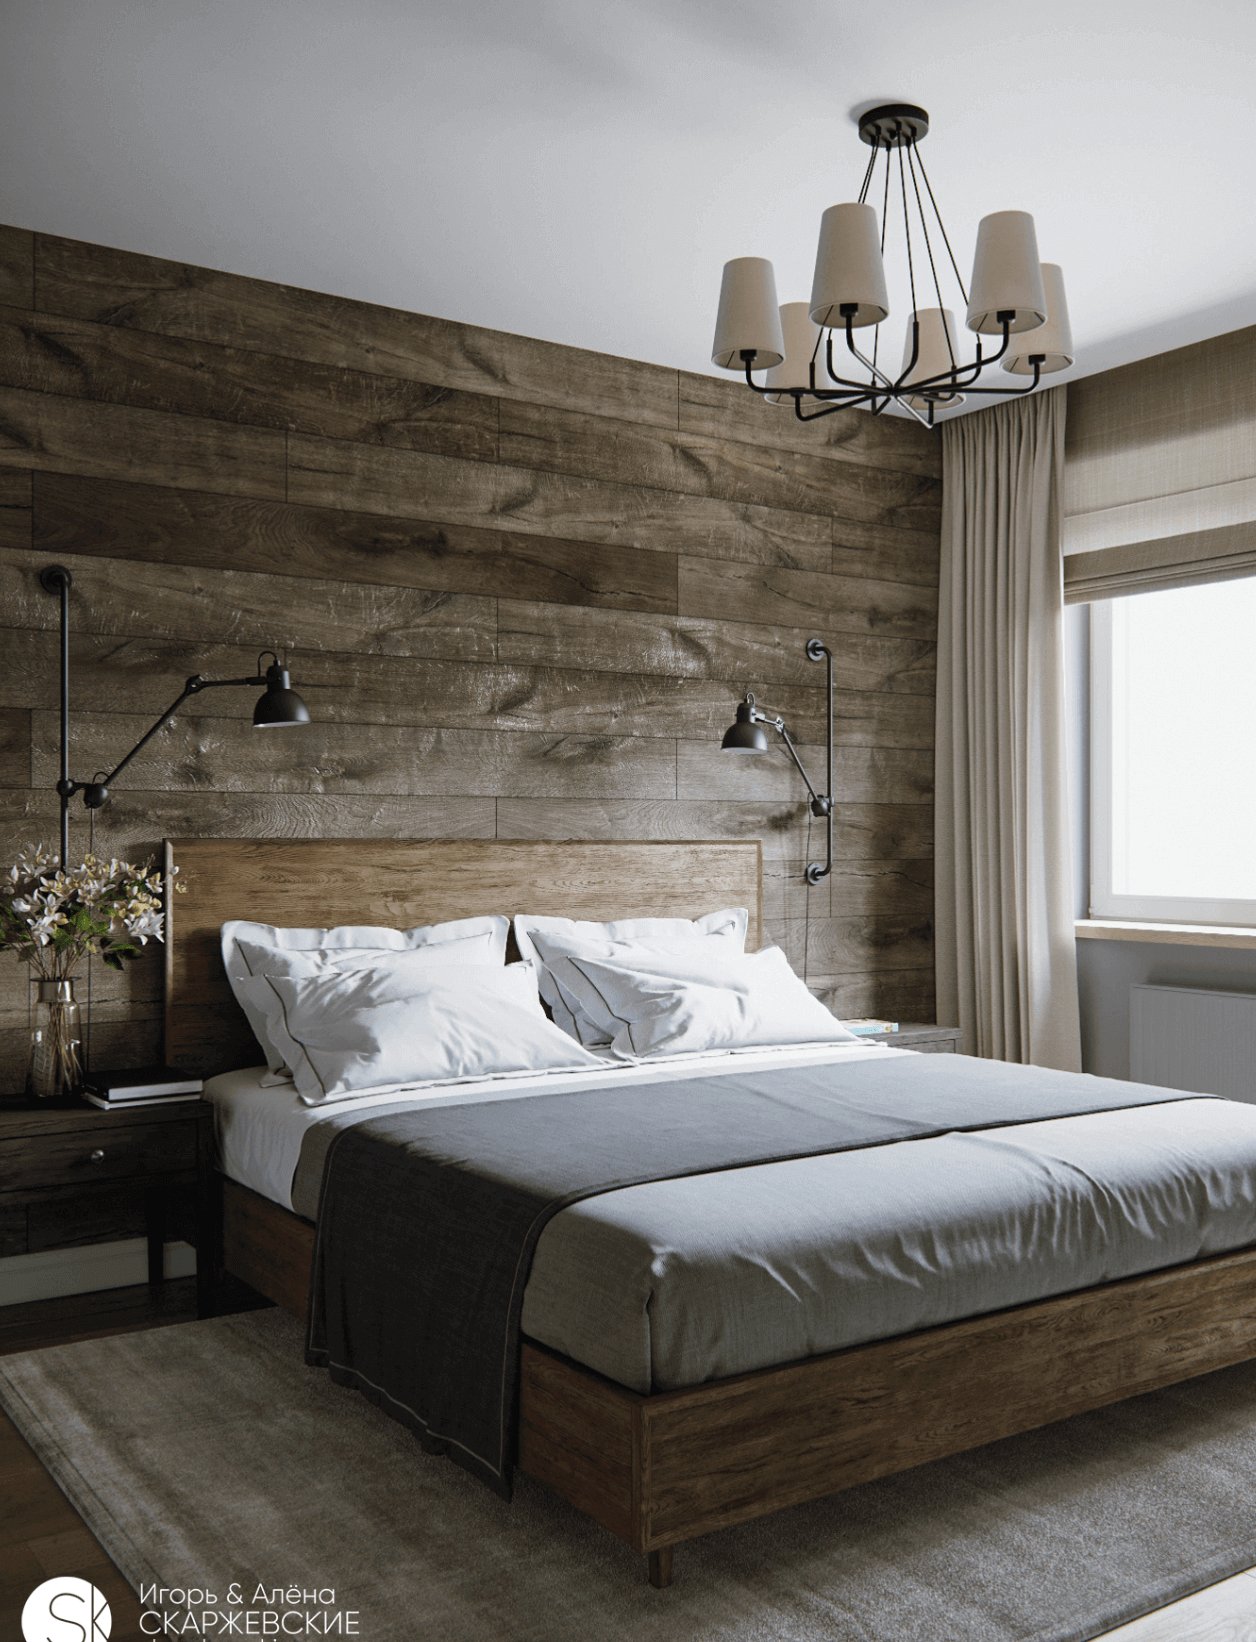 giấy dán tường giả gỗ dễ dùng cho phòng ngủ